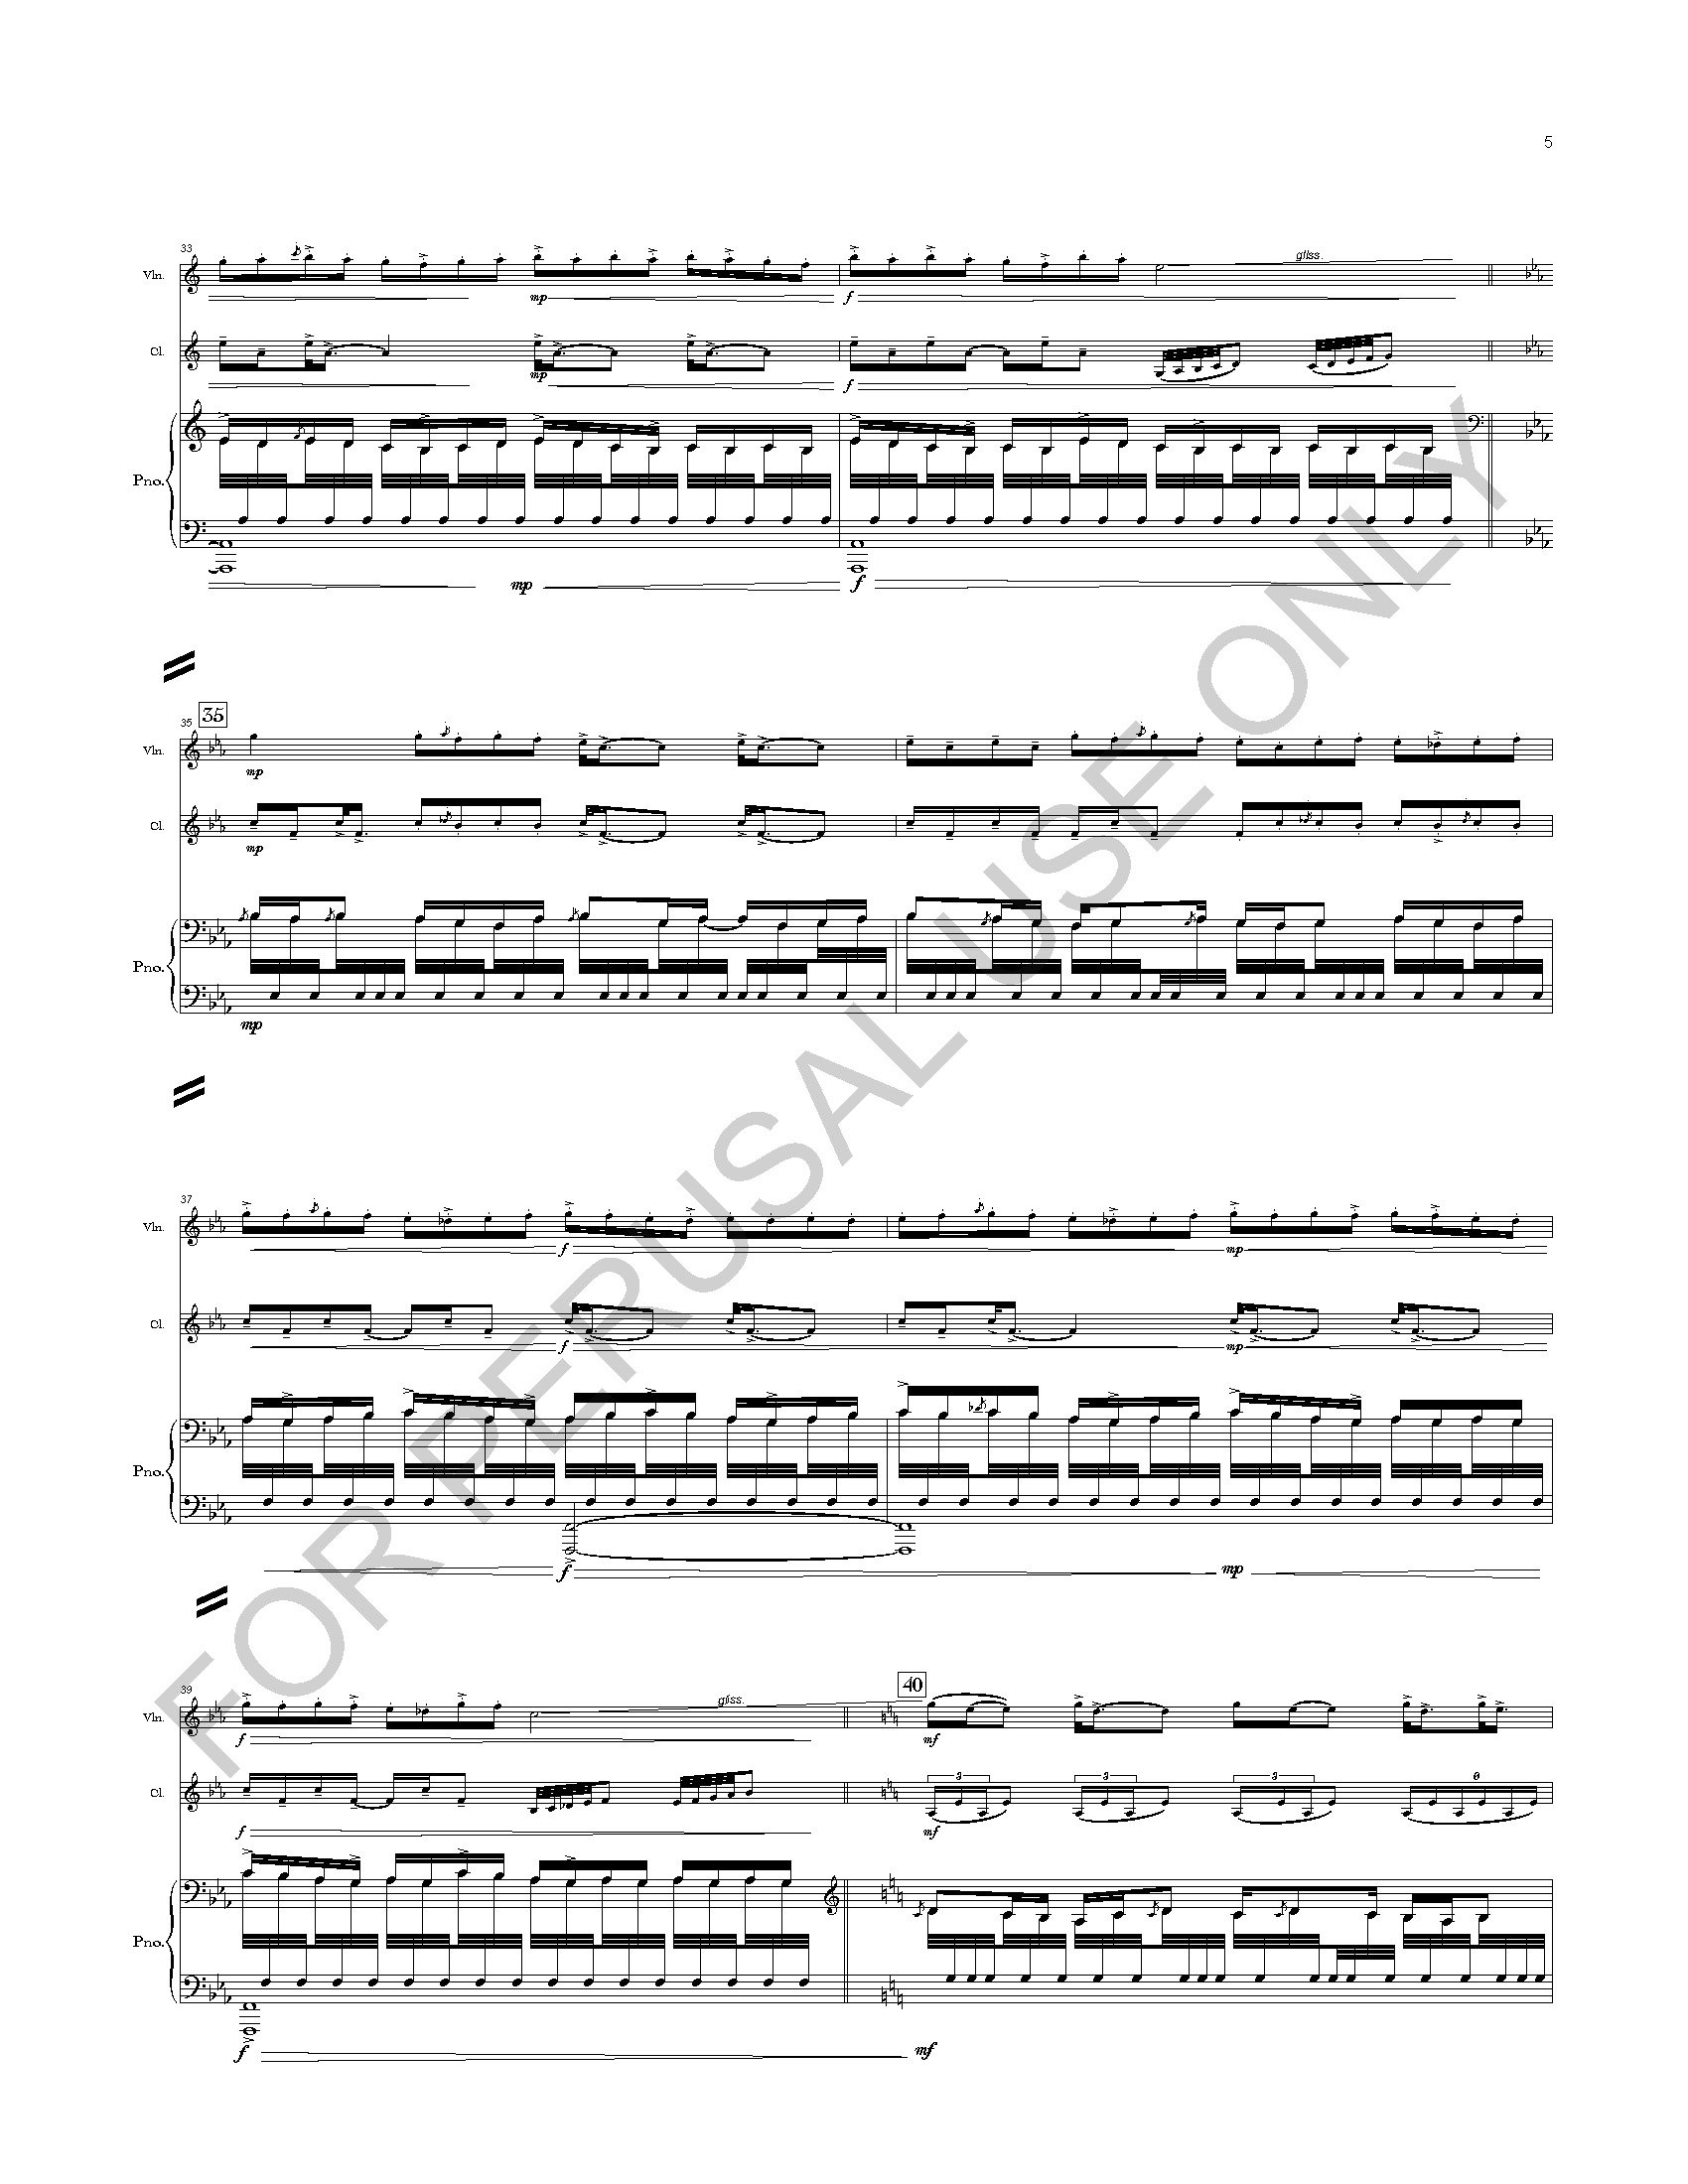 RANKIN - I. ASCENT - PIANO SCORE_Page_05.jpg